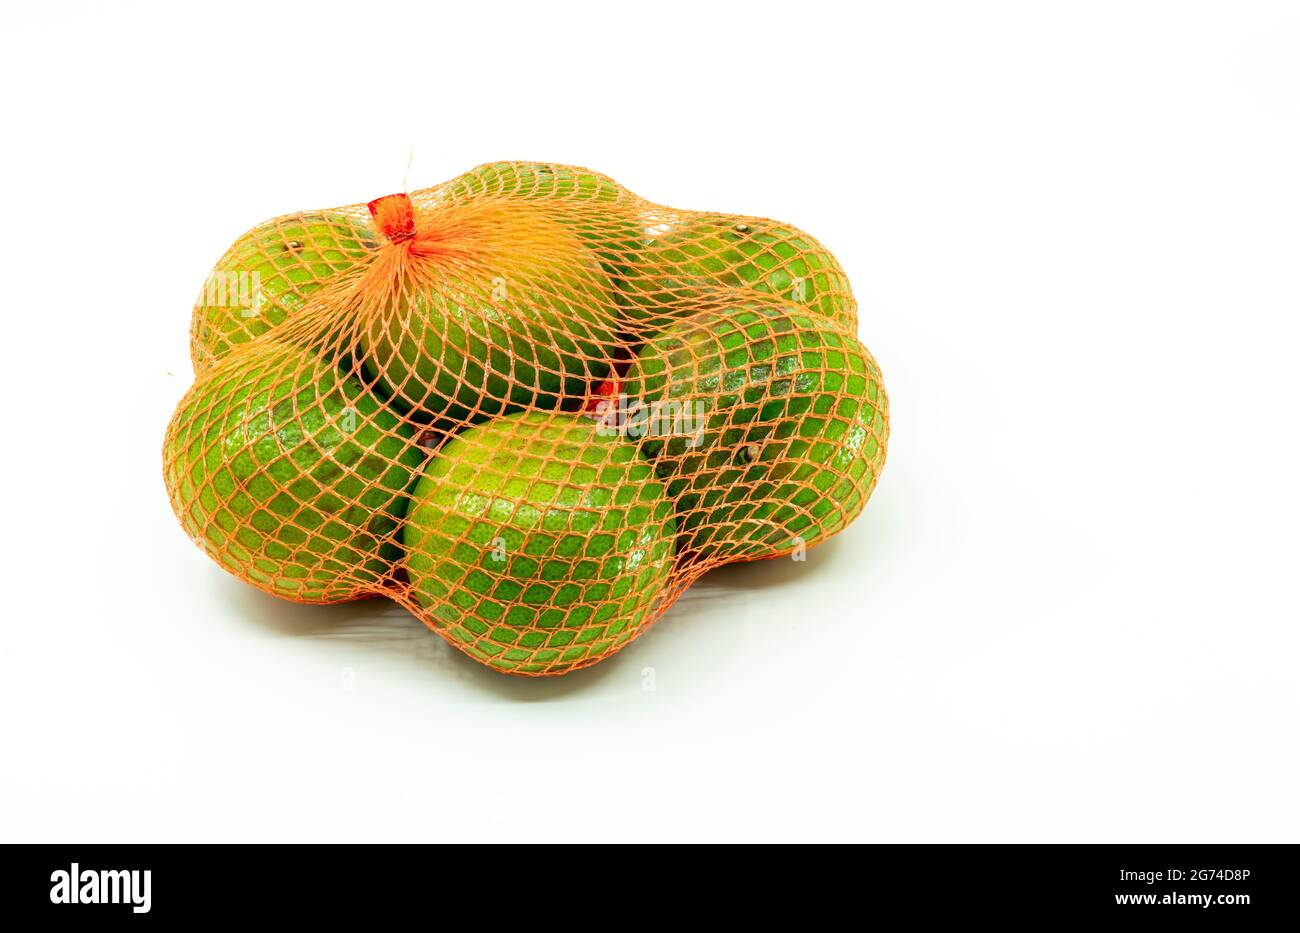 Gruppo di arancia o Tangerine in borsa a rete o in borsa eco mesh per la vendita in supermercato, immagine su sfondo bianco. Foto Stock